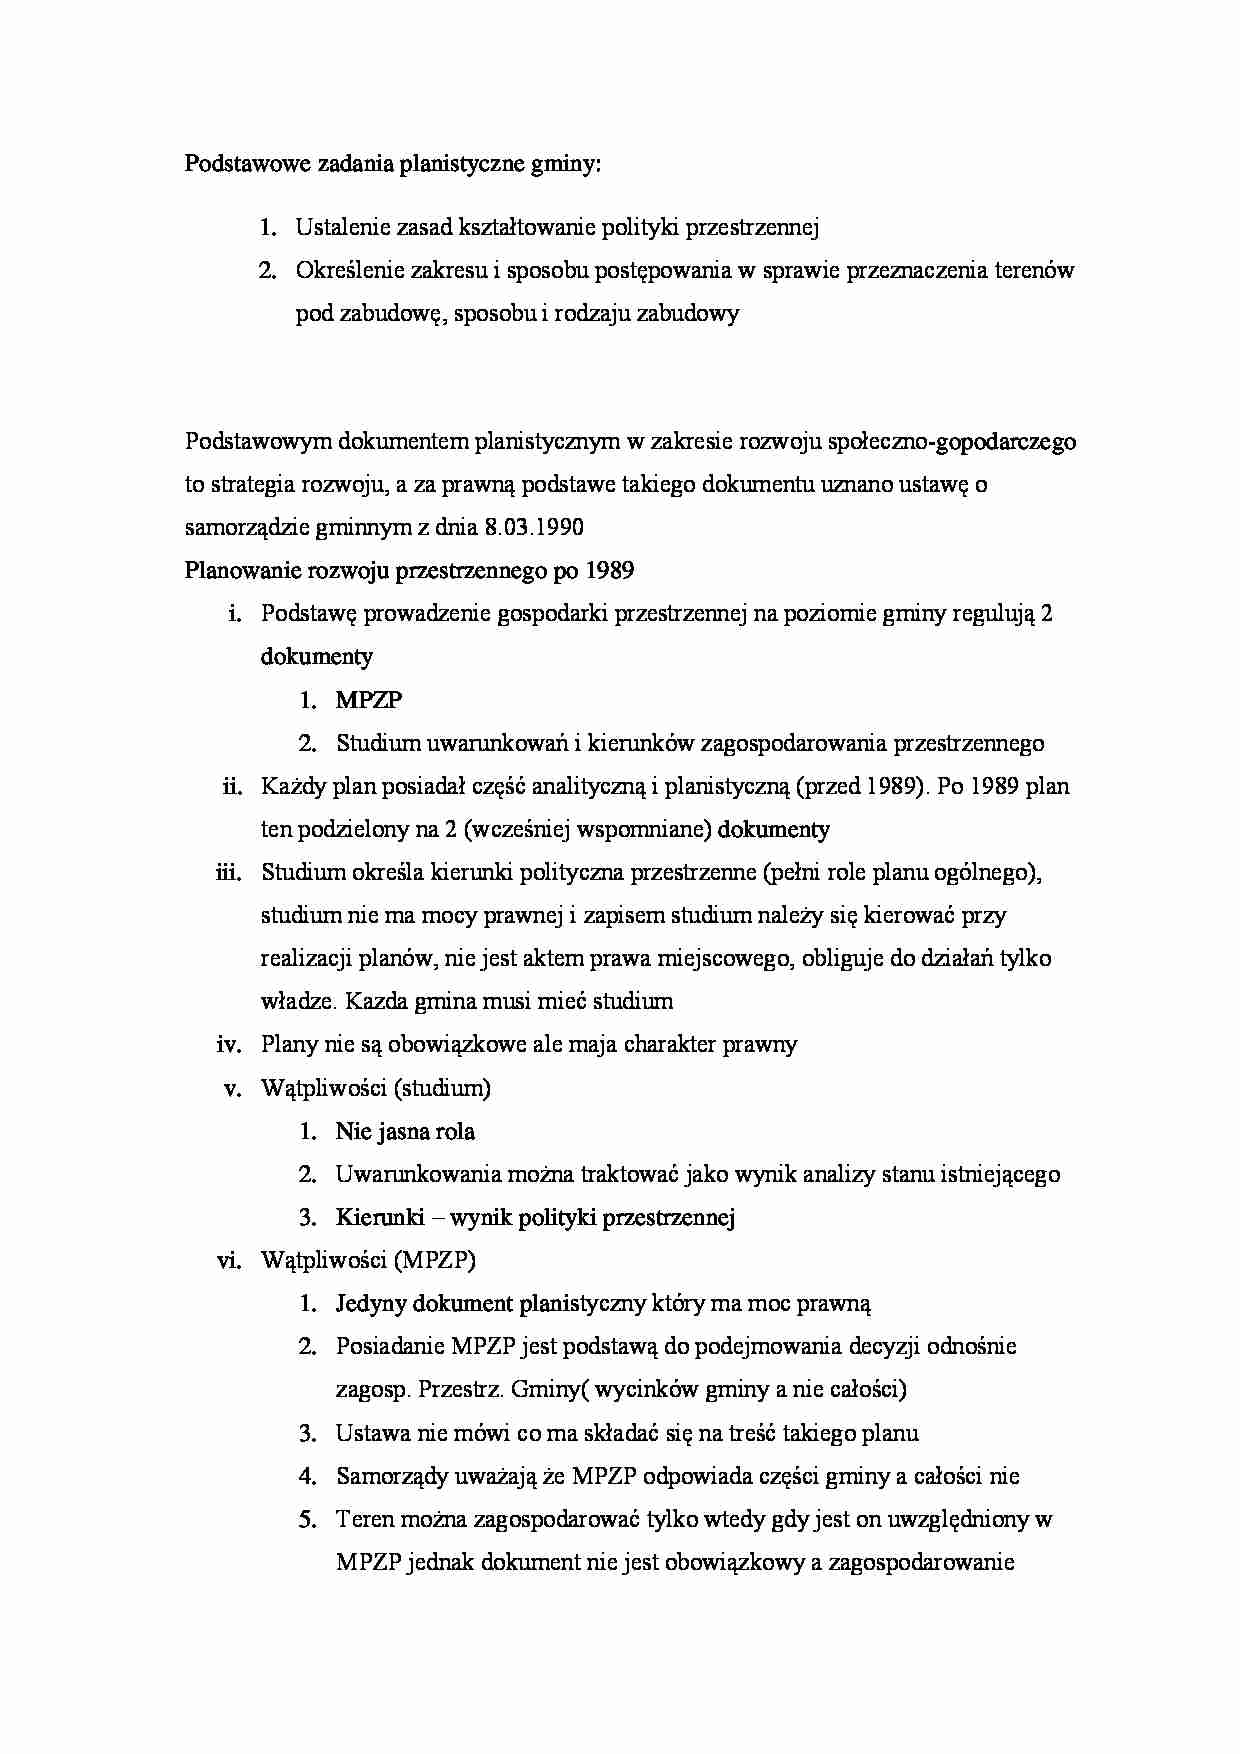 Podstawowe zadania planistyczne gminy - strona 1